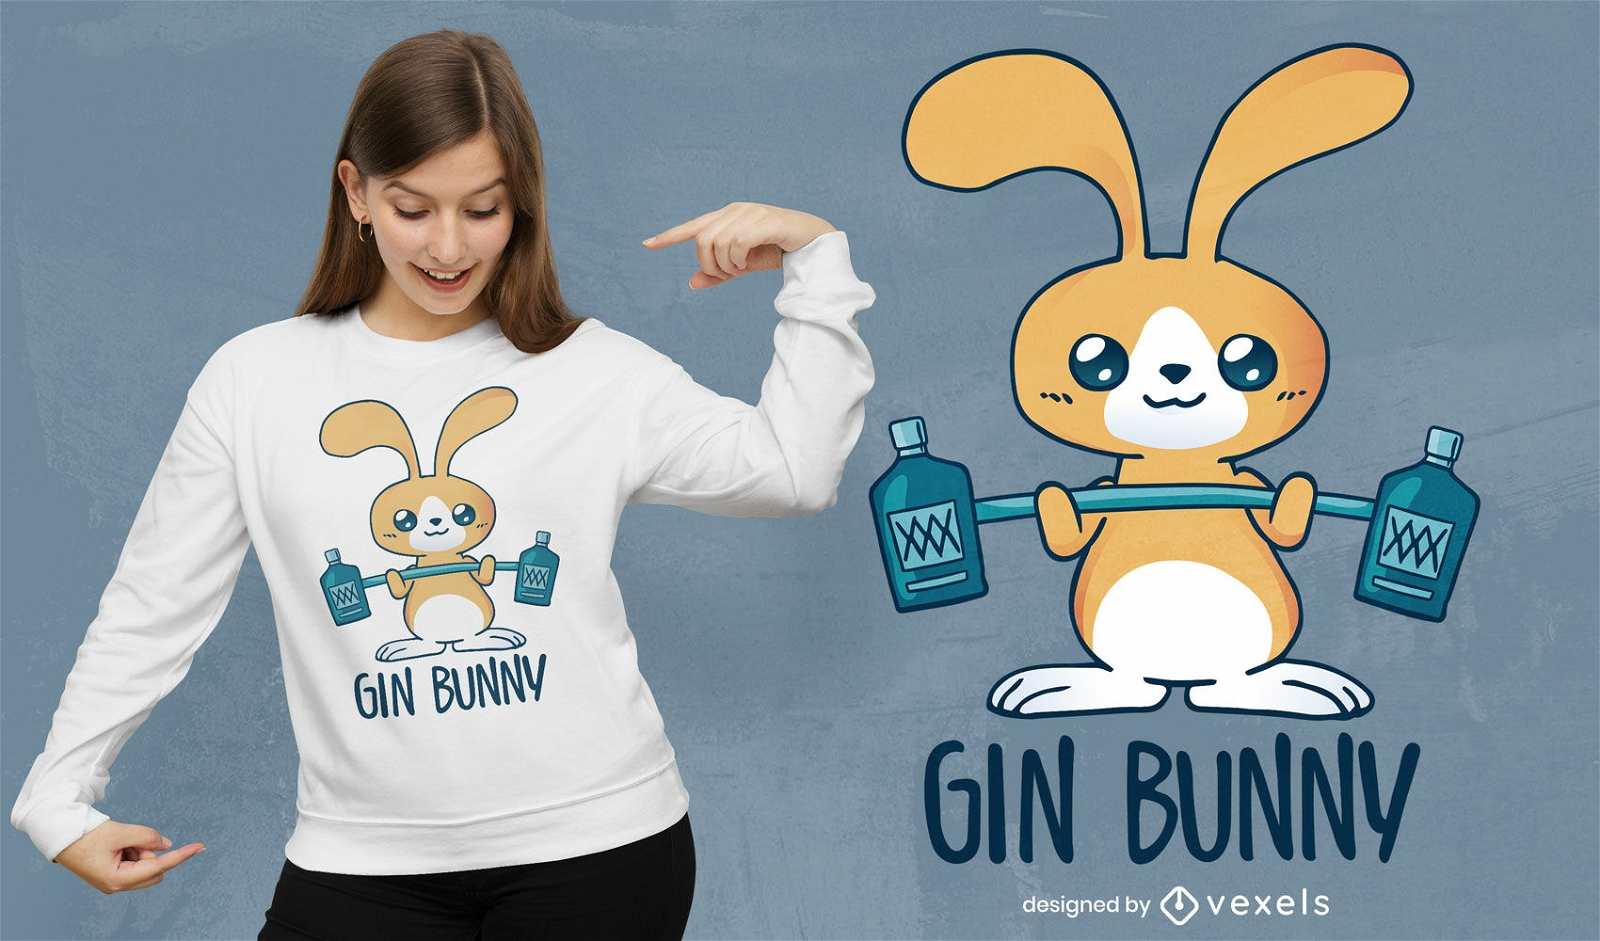 Gin bunny t-shirt design